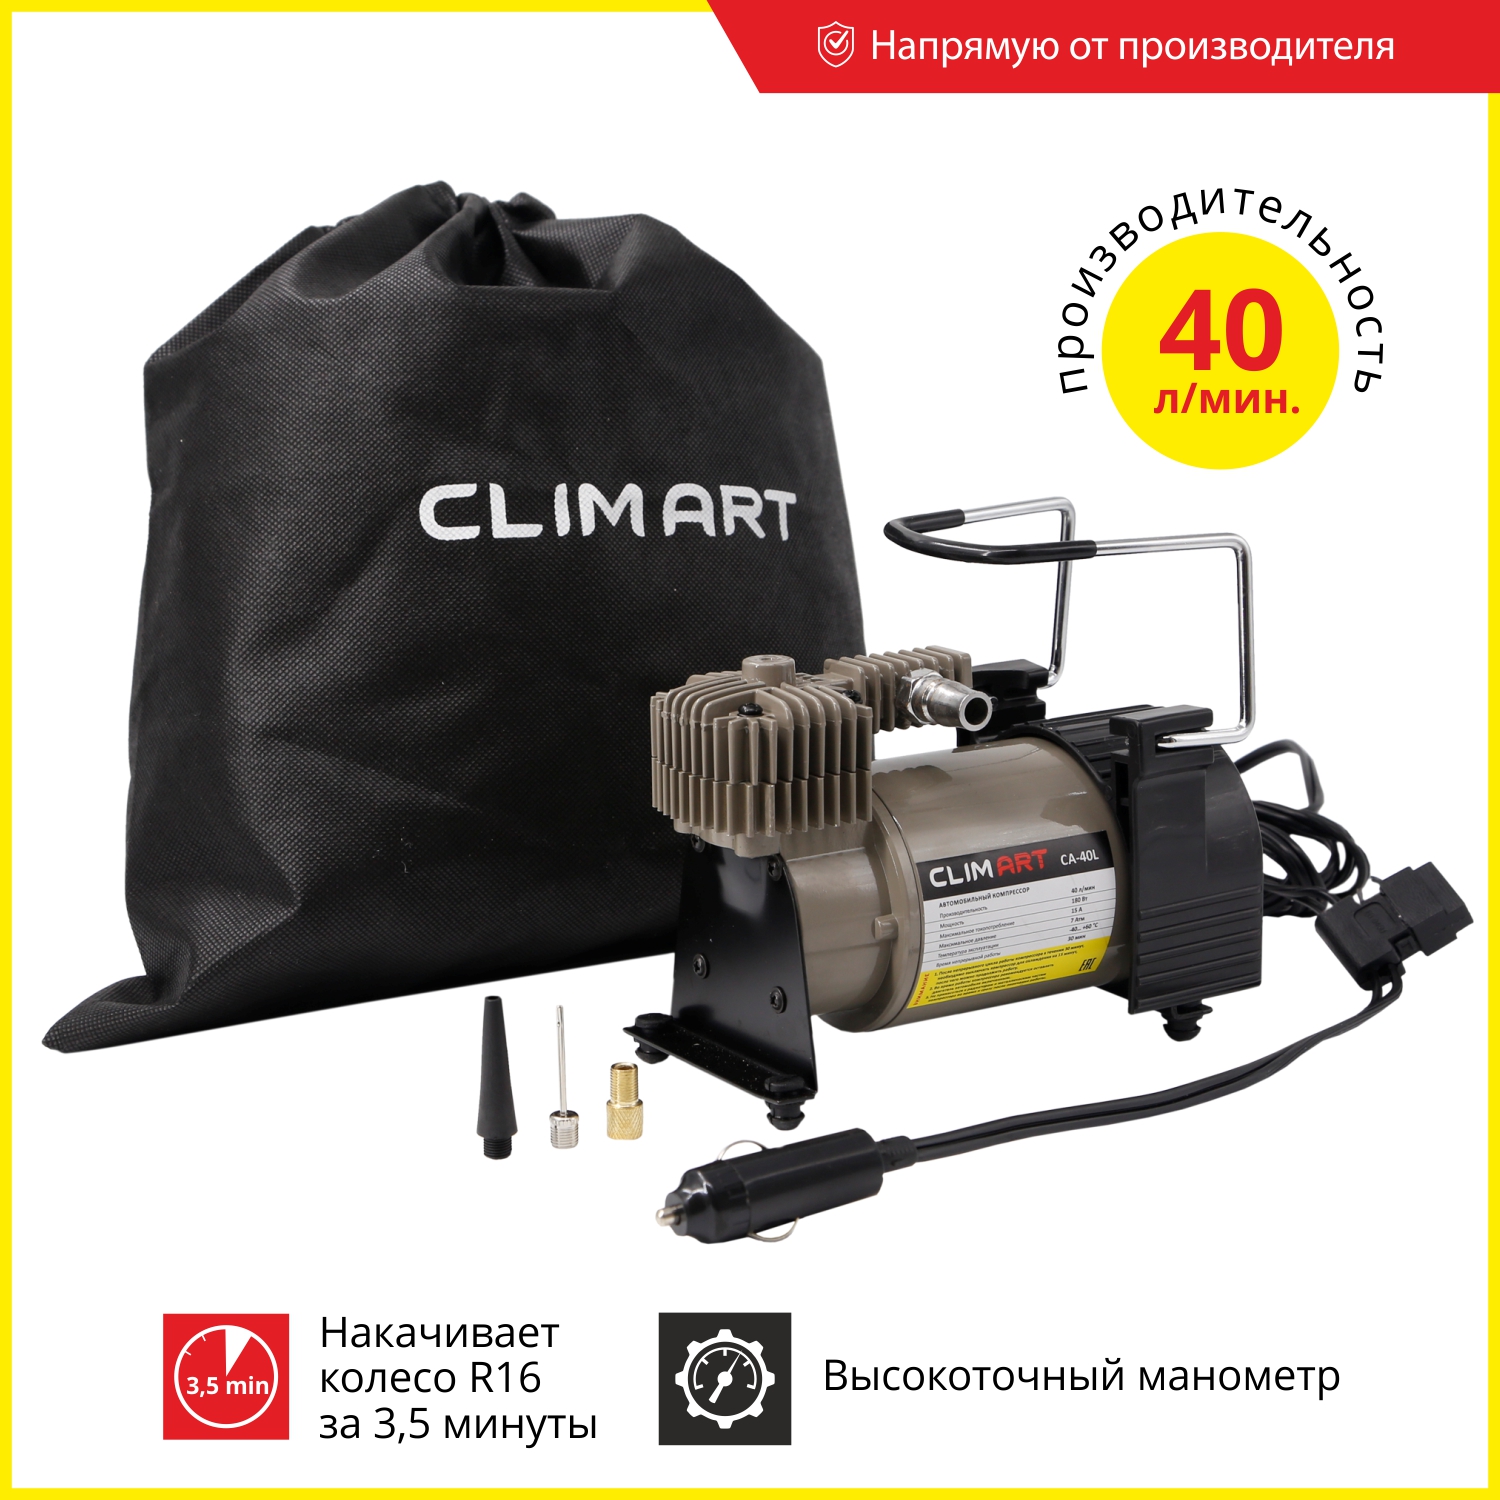 Компрессор Clim Art CA-40L, 40 л/мин